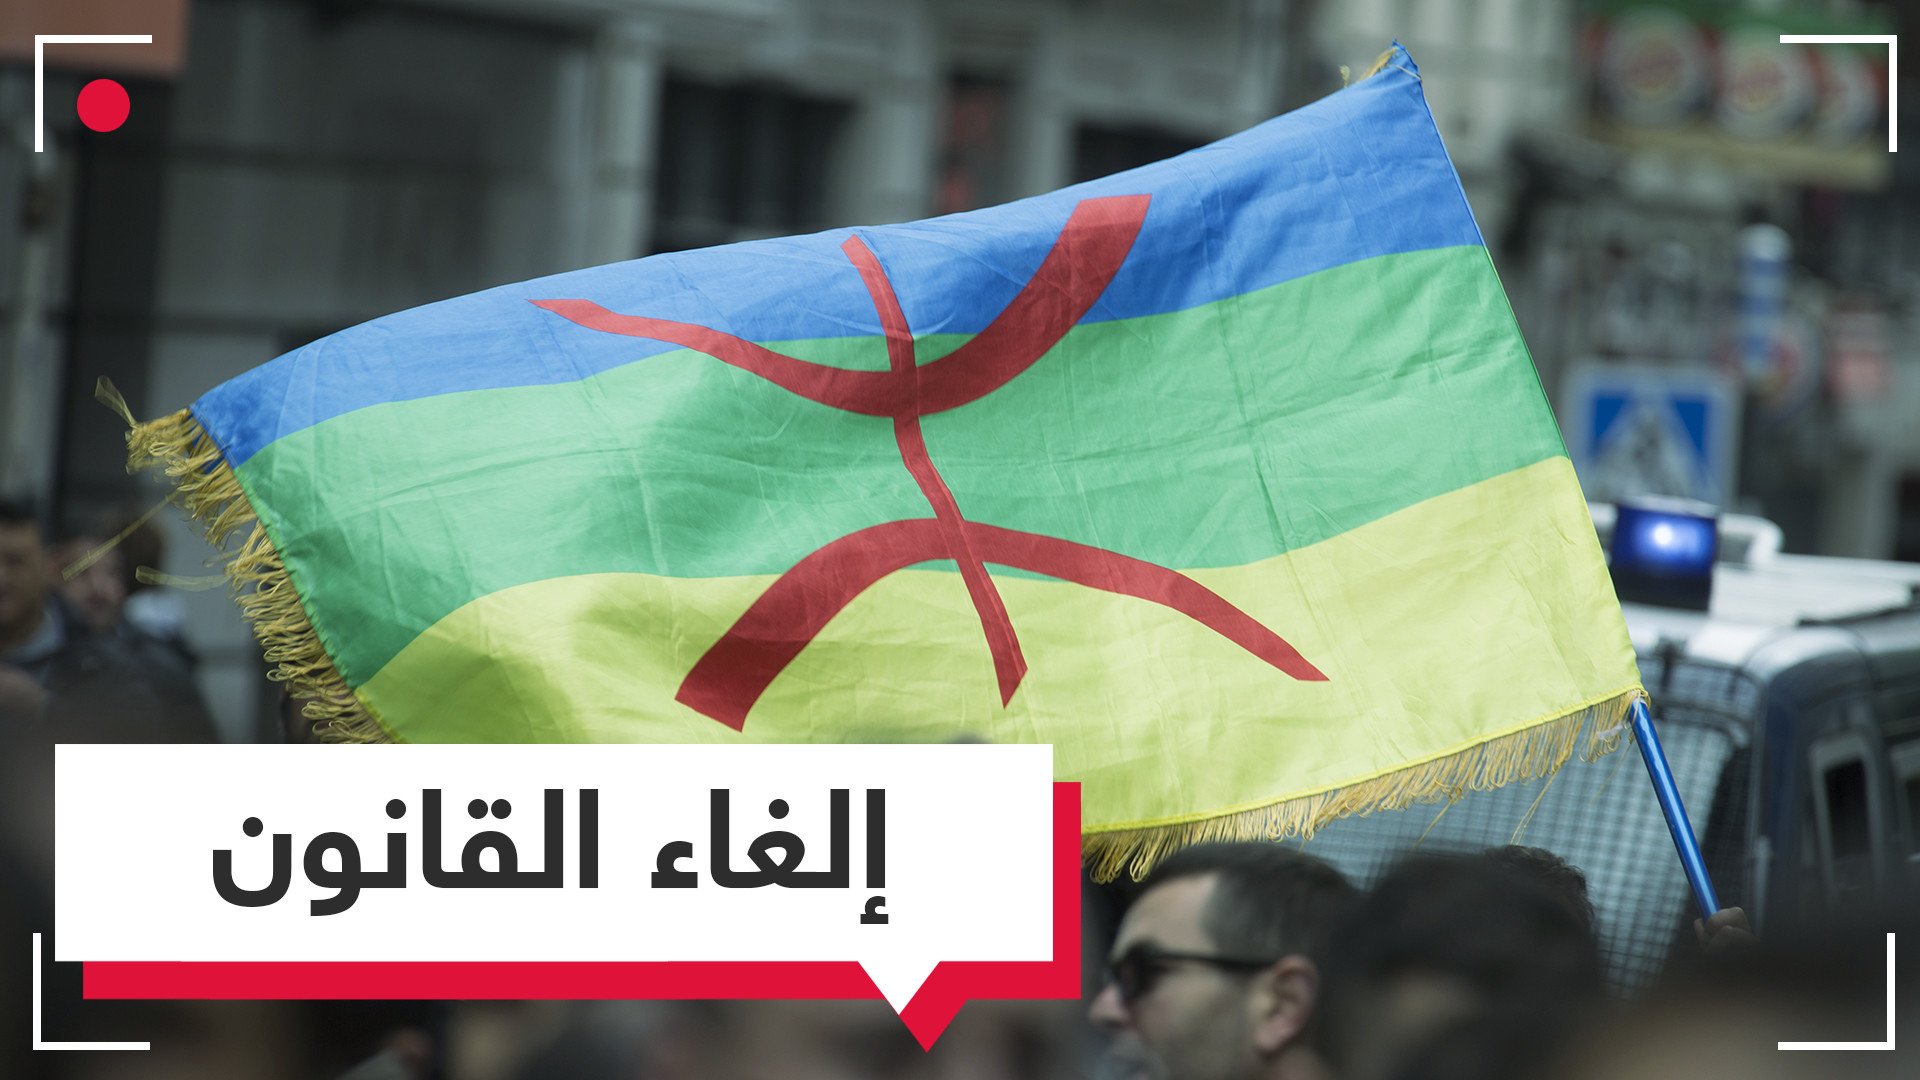 البرلمان المغربي يرفض طبع الأوراق المالية  بالأمازيغية 